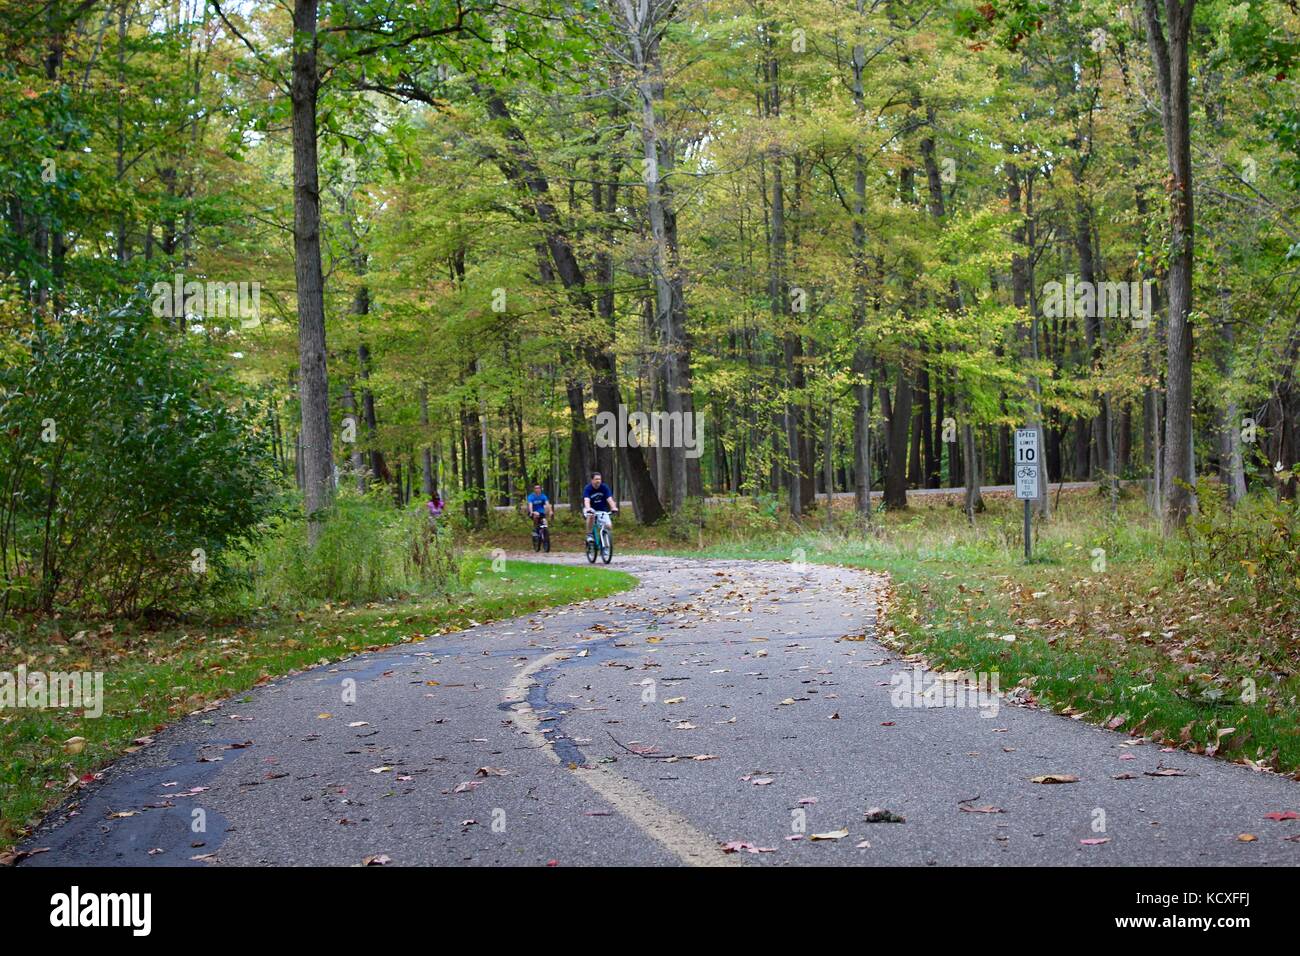 Les personnes bénéficiant de la journée dans les bois sur un sentier de marche et de vélo en famille et amis à l'extérieur dans un parc l'exercice et de conditionnement physique Banque D'Images